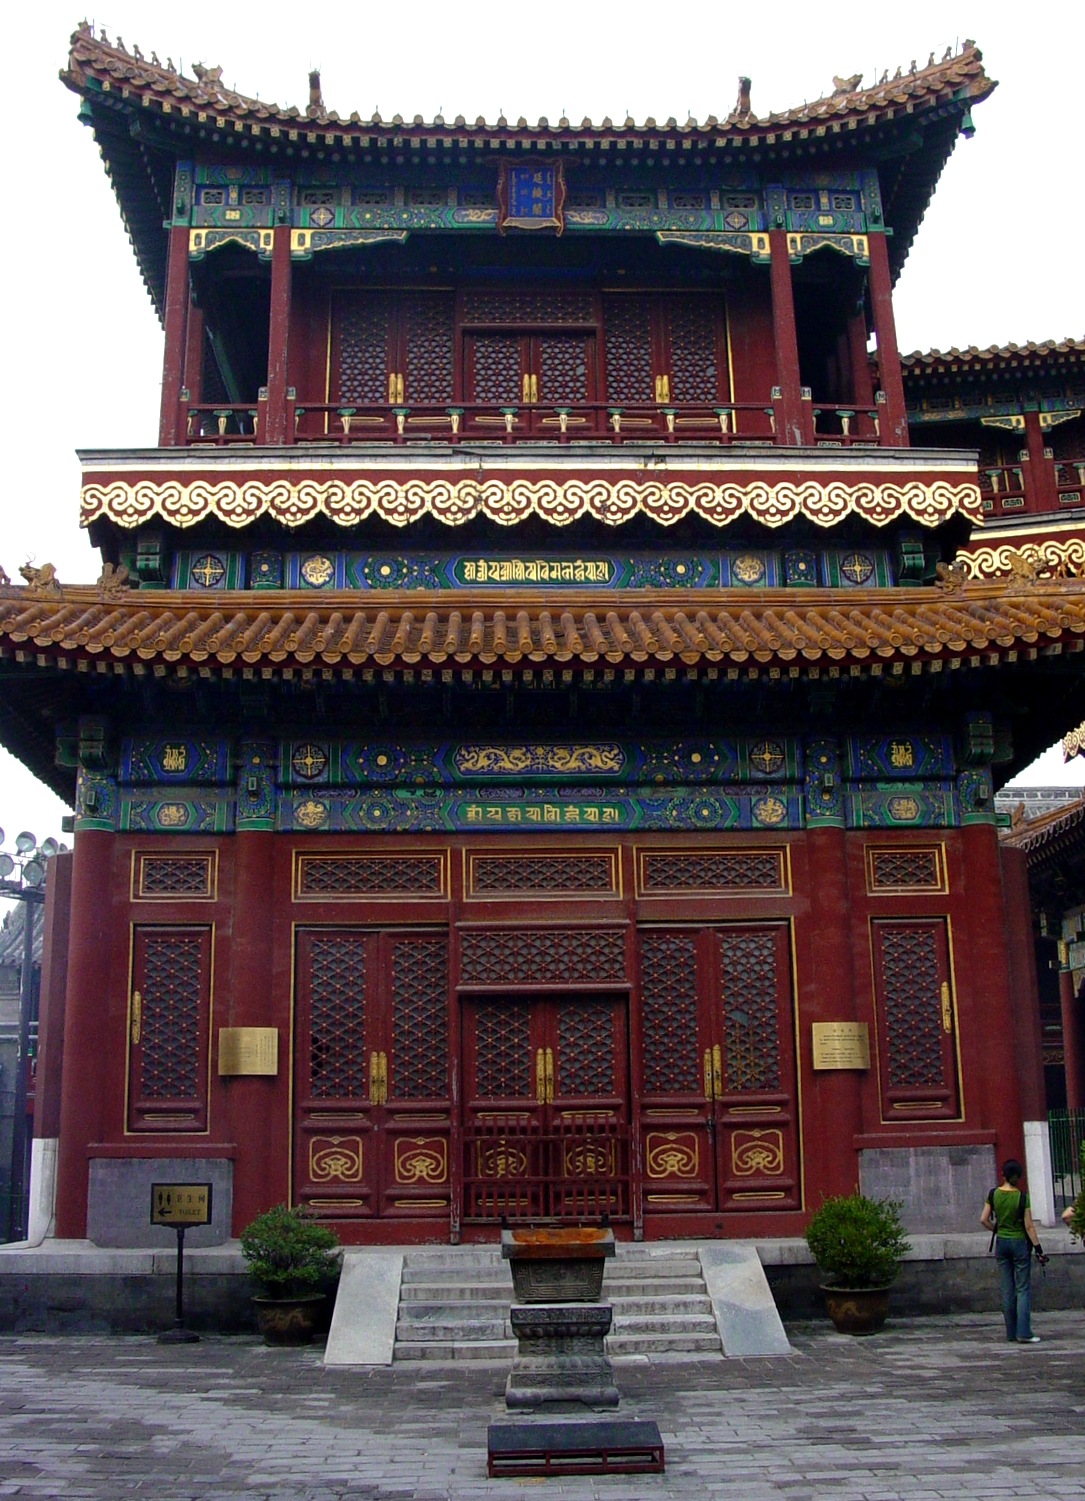 Temple facade